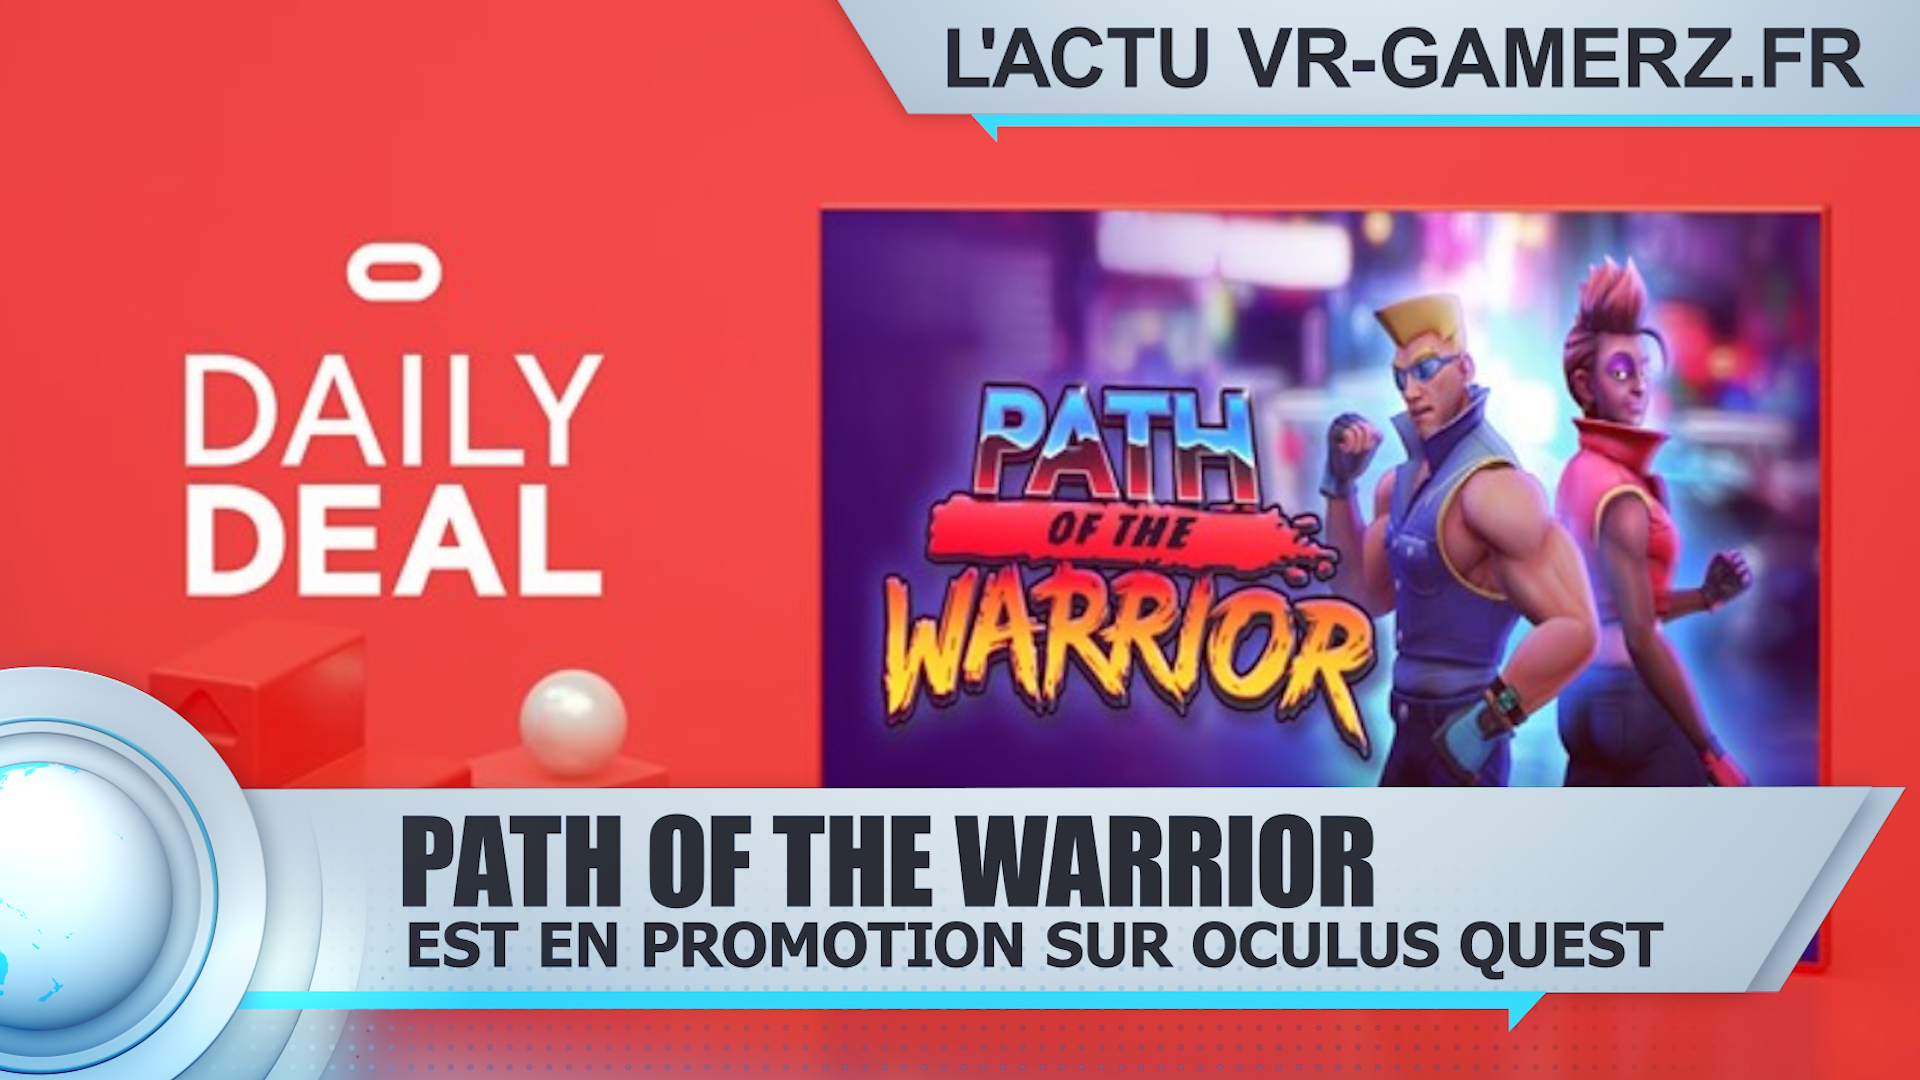 Path of the warrior est en promotion sur Oculus quest